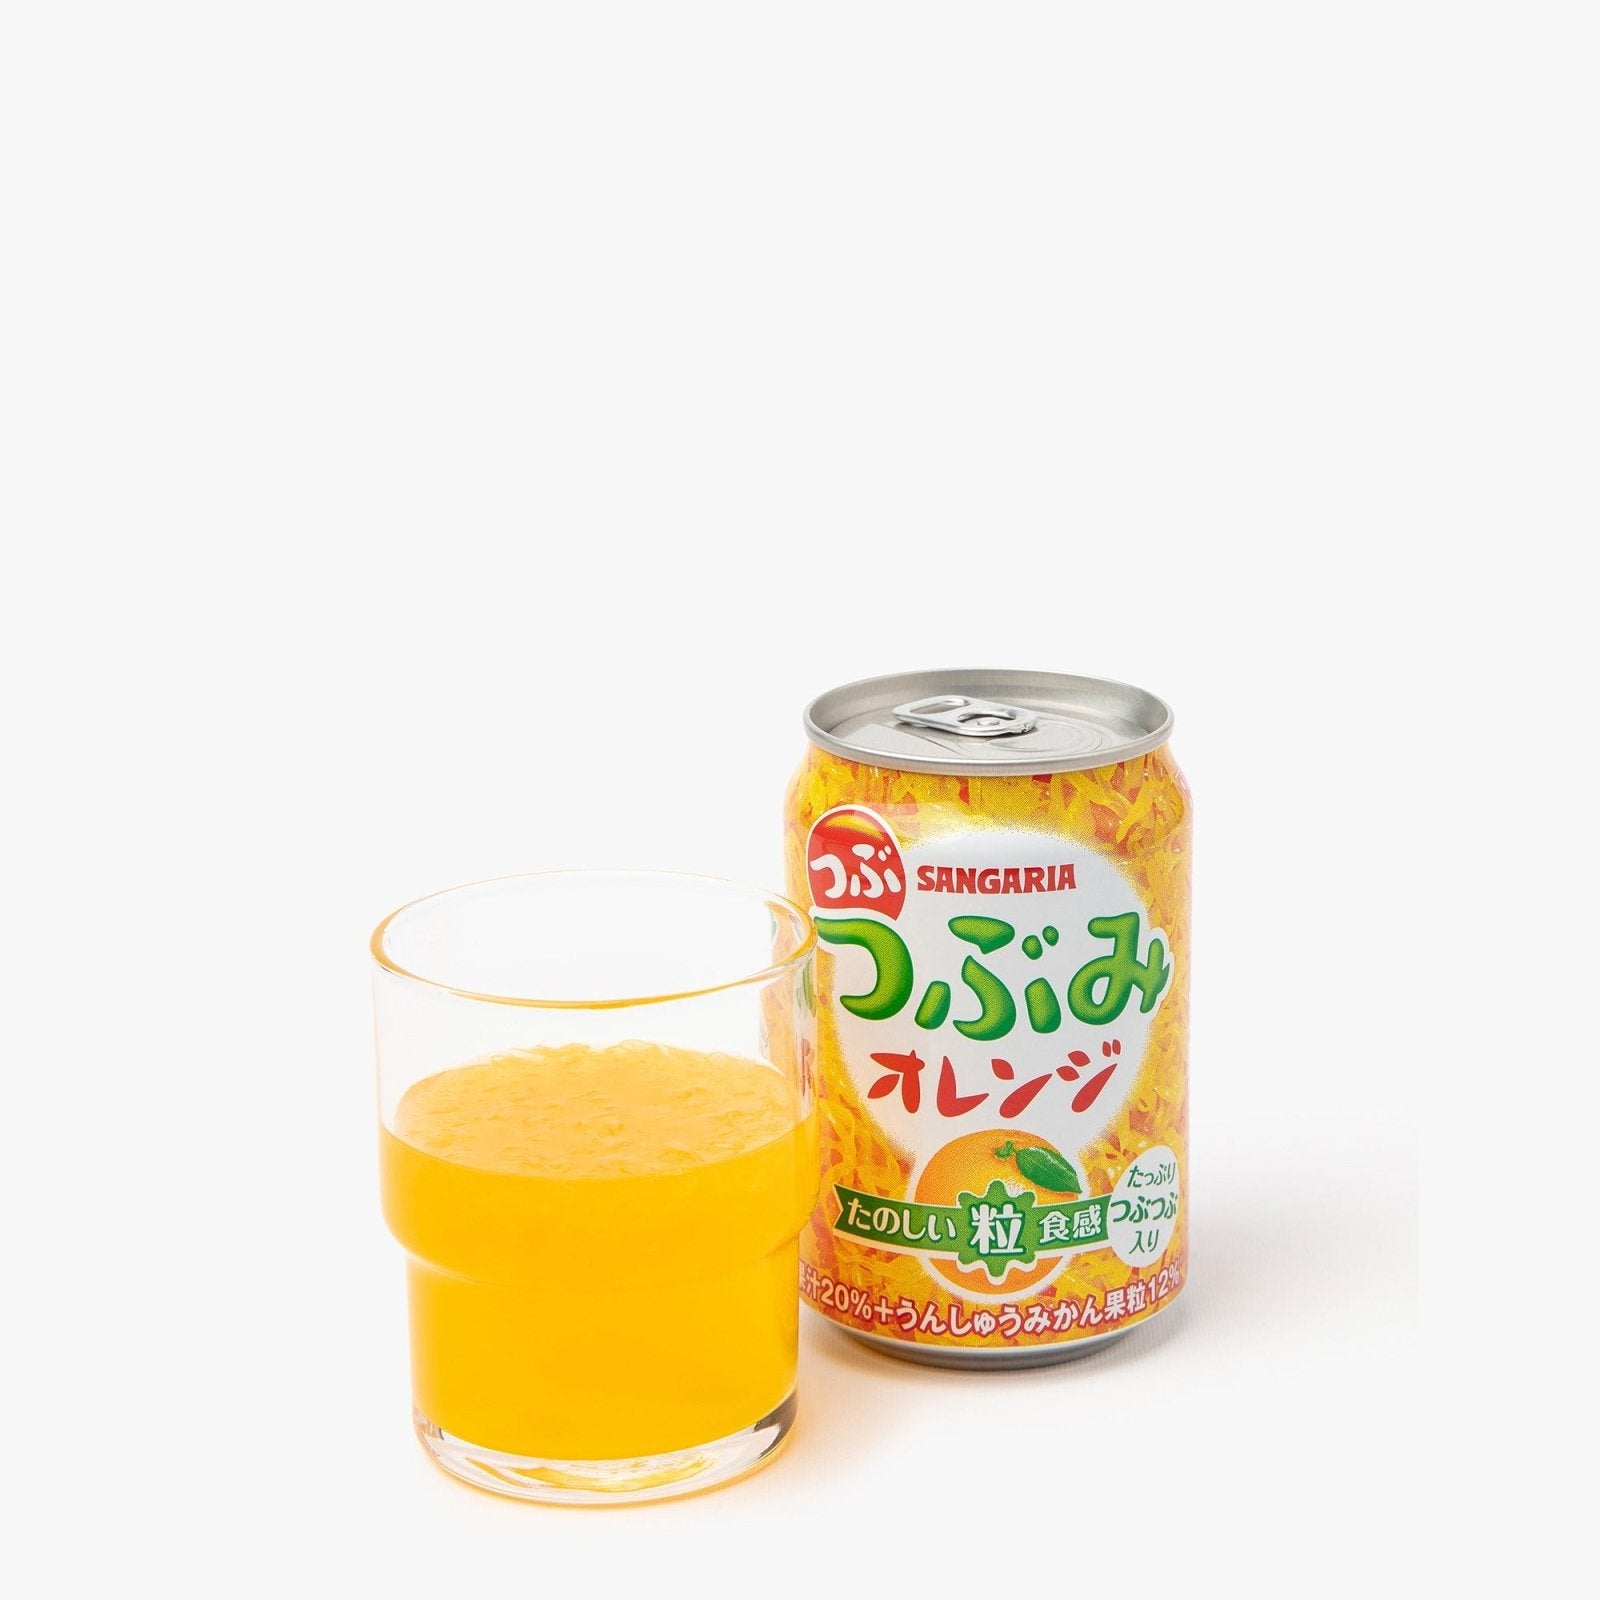 Jus d'orange avec pulpe - 280g - Sangaria - iRASSHAi